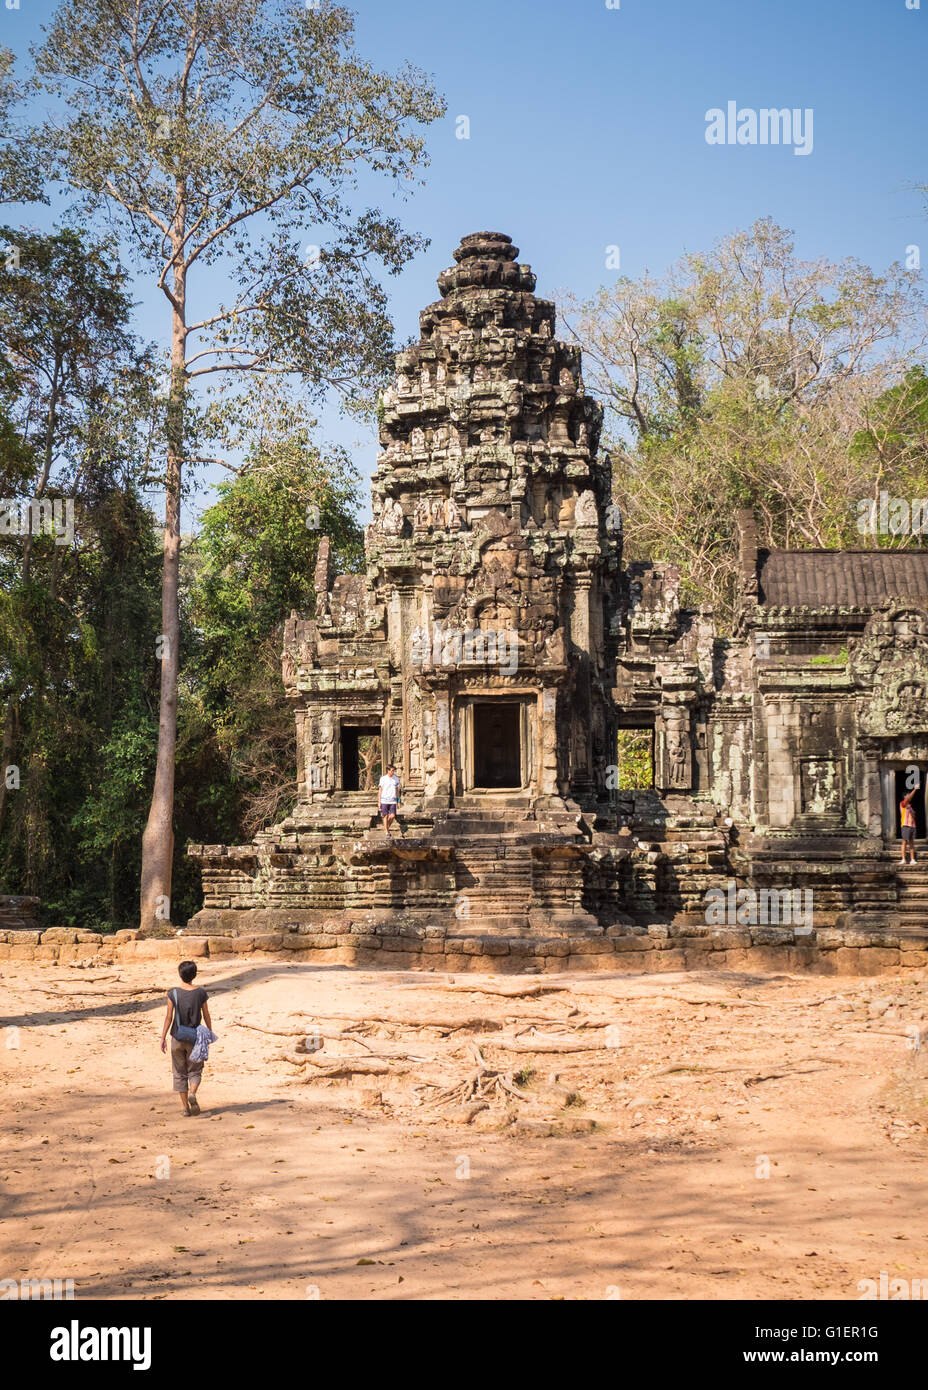 Un touriste à Chau temple dans le Siem Reap, Cambodge Banque D'Images